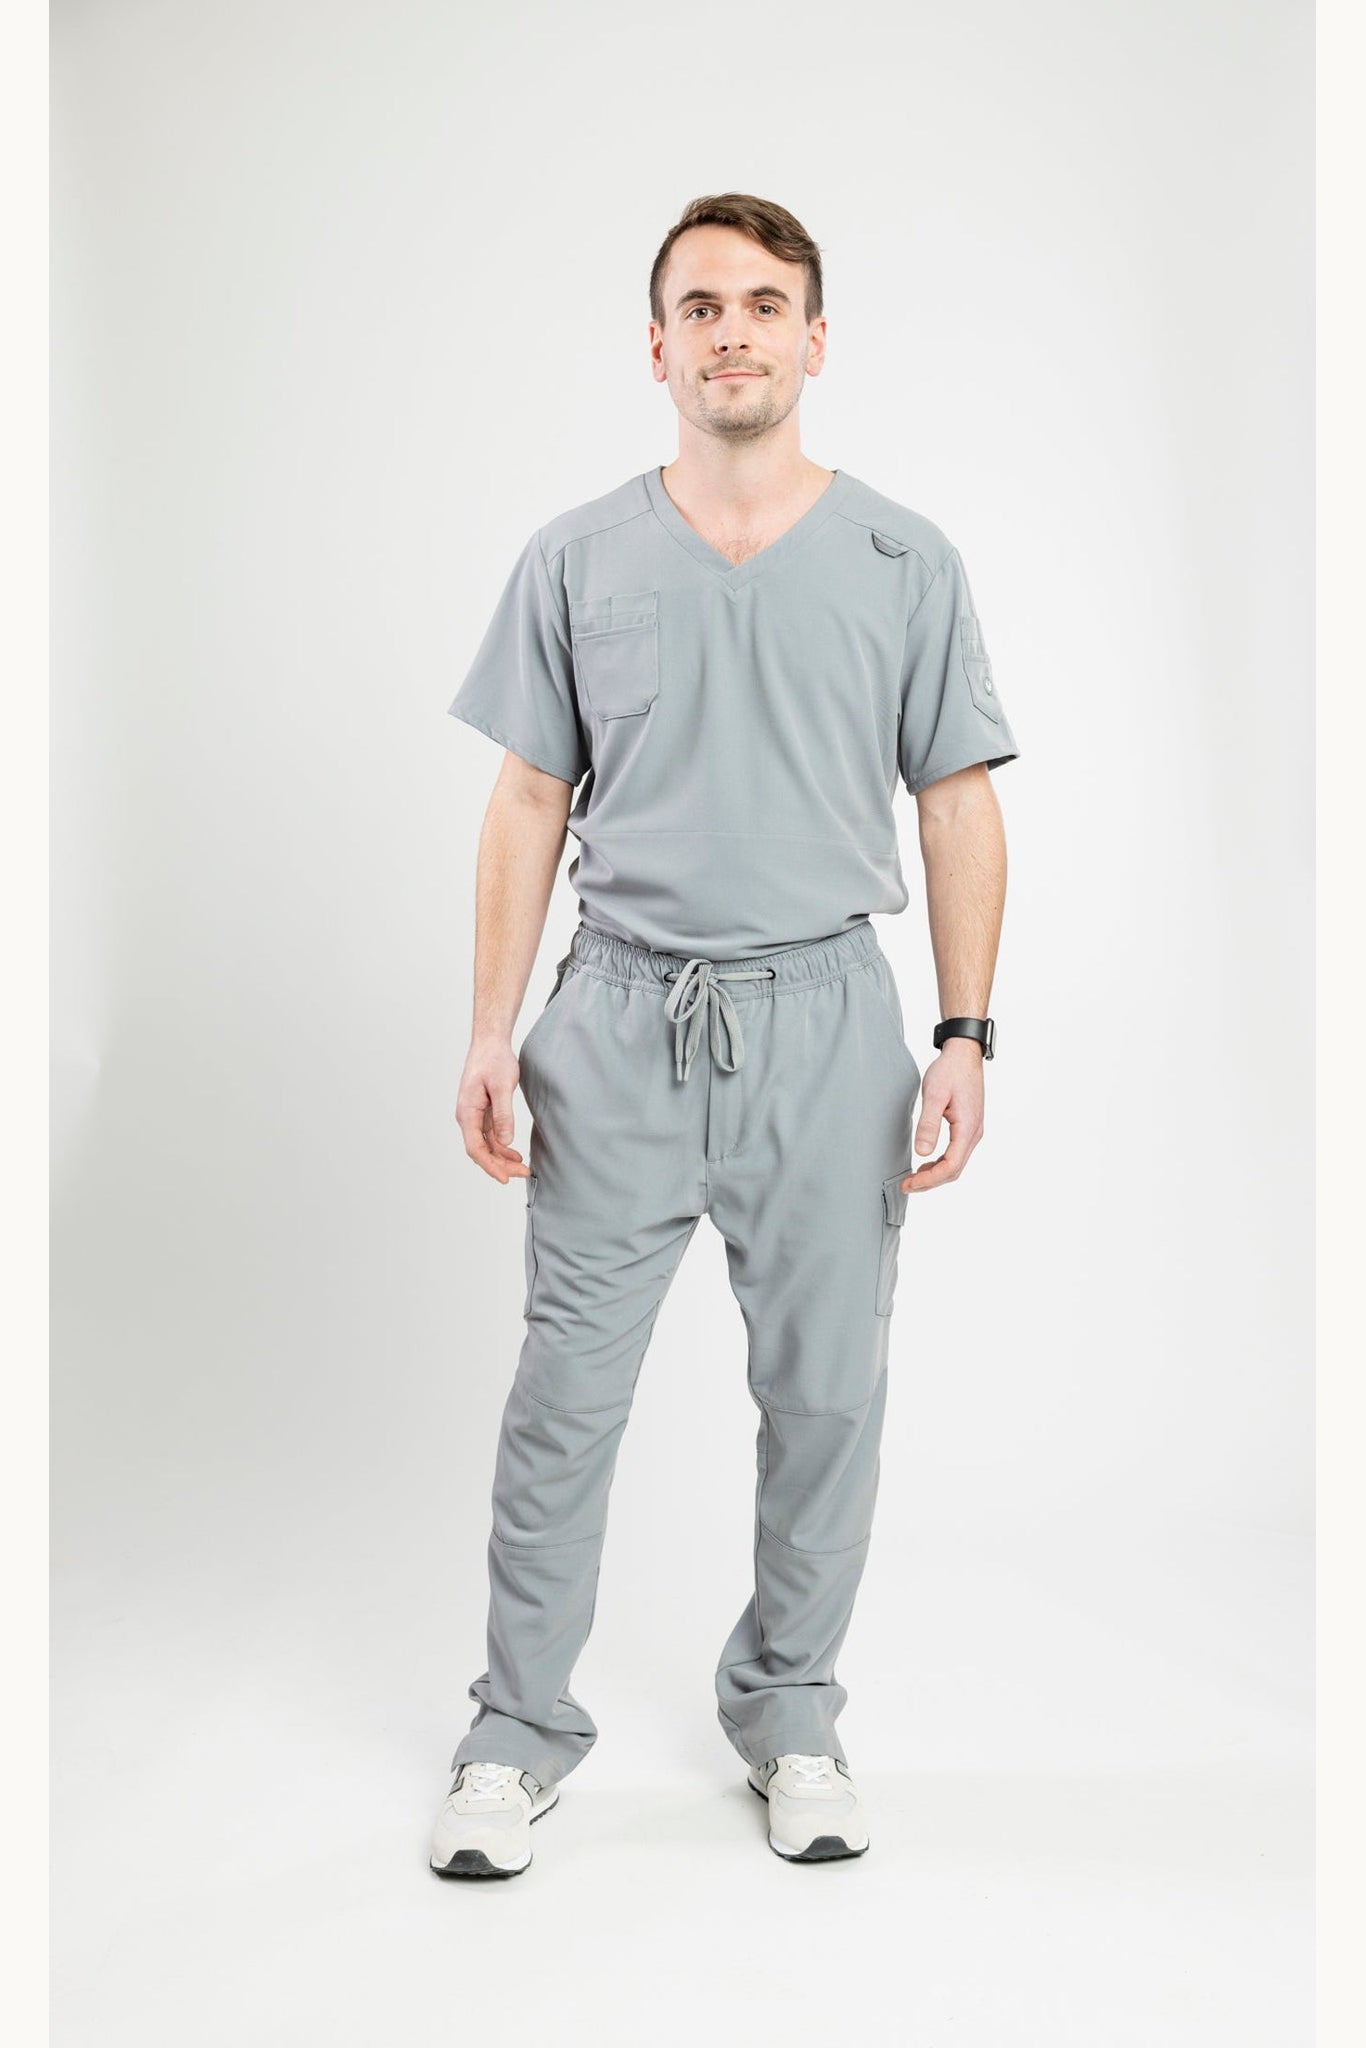 Apollo Scrubs - His - Utility Pant for men, antimicrobial, straight leg loose style bottom